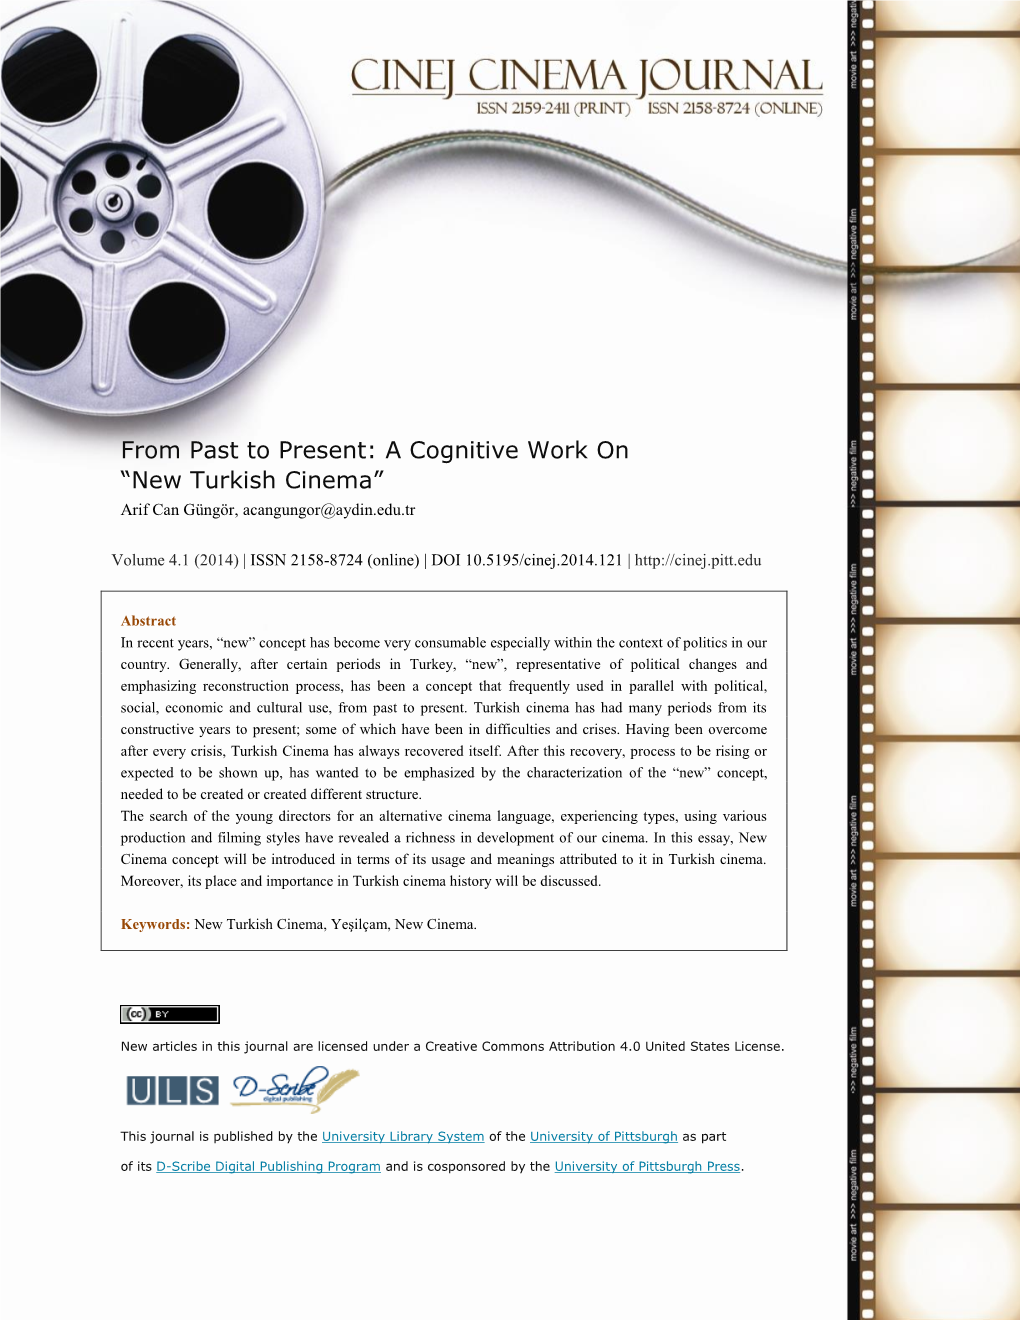 New Turkish Cinema” Arif Can Güngör, Acangungor@Aydin.Edu.Tr